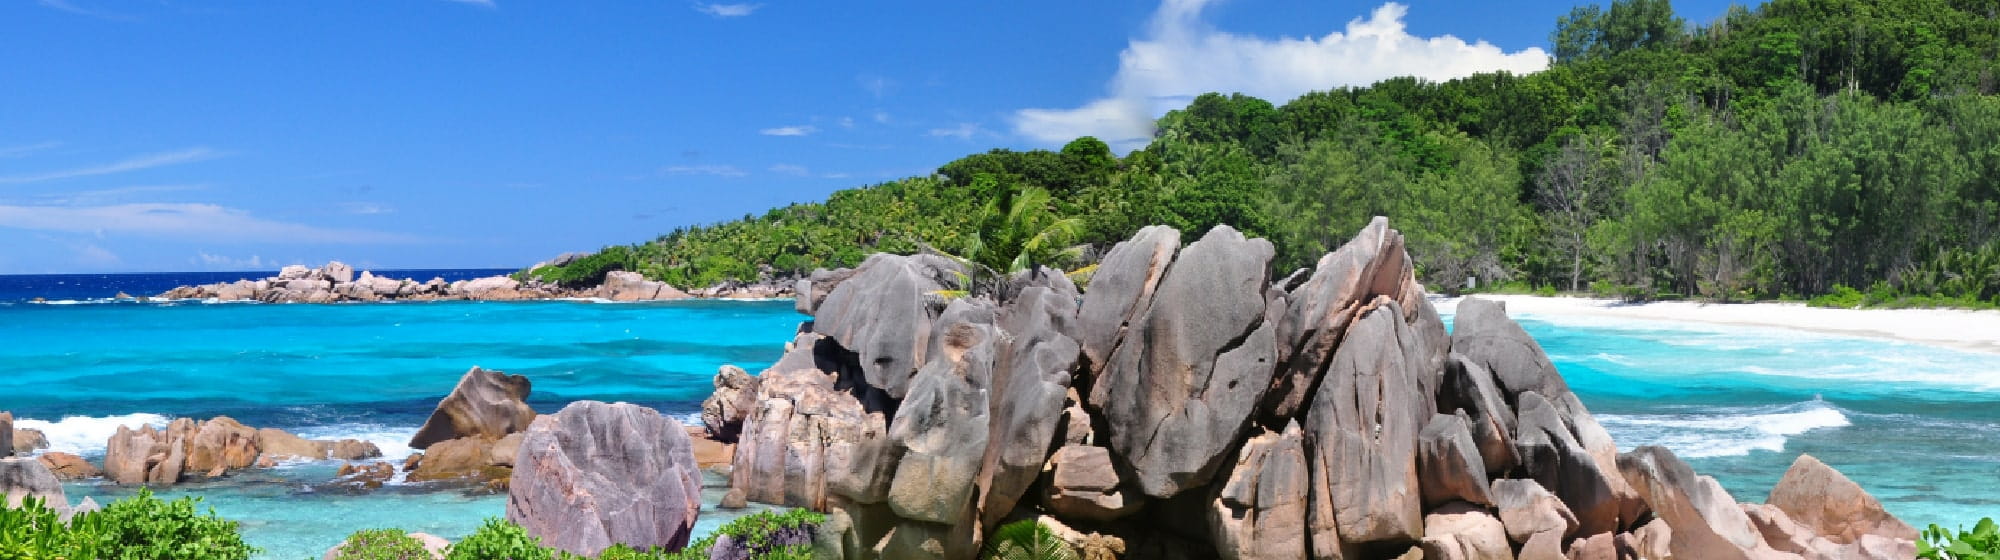 Image de plage avec des rochers et une eau cristaline. 